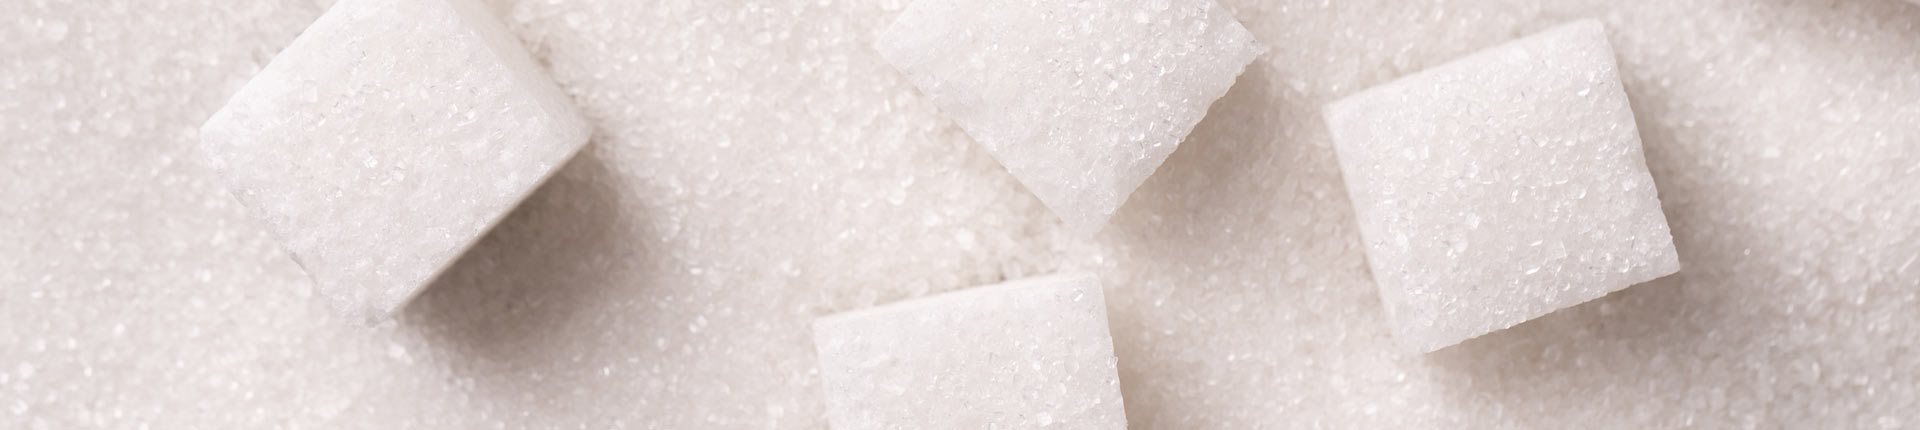 Czy cukier może powodować nadciśnienie?